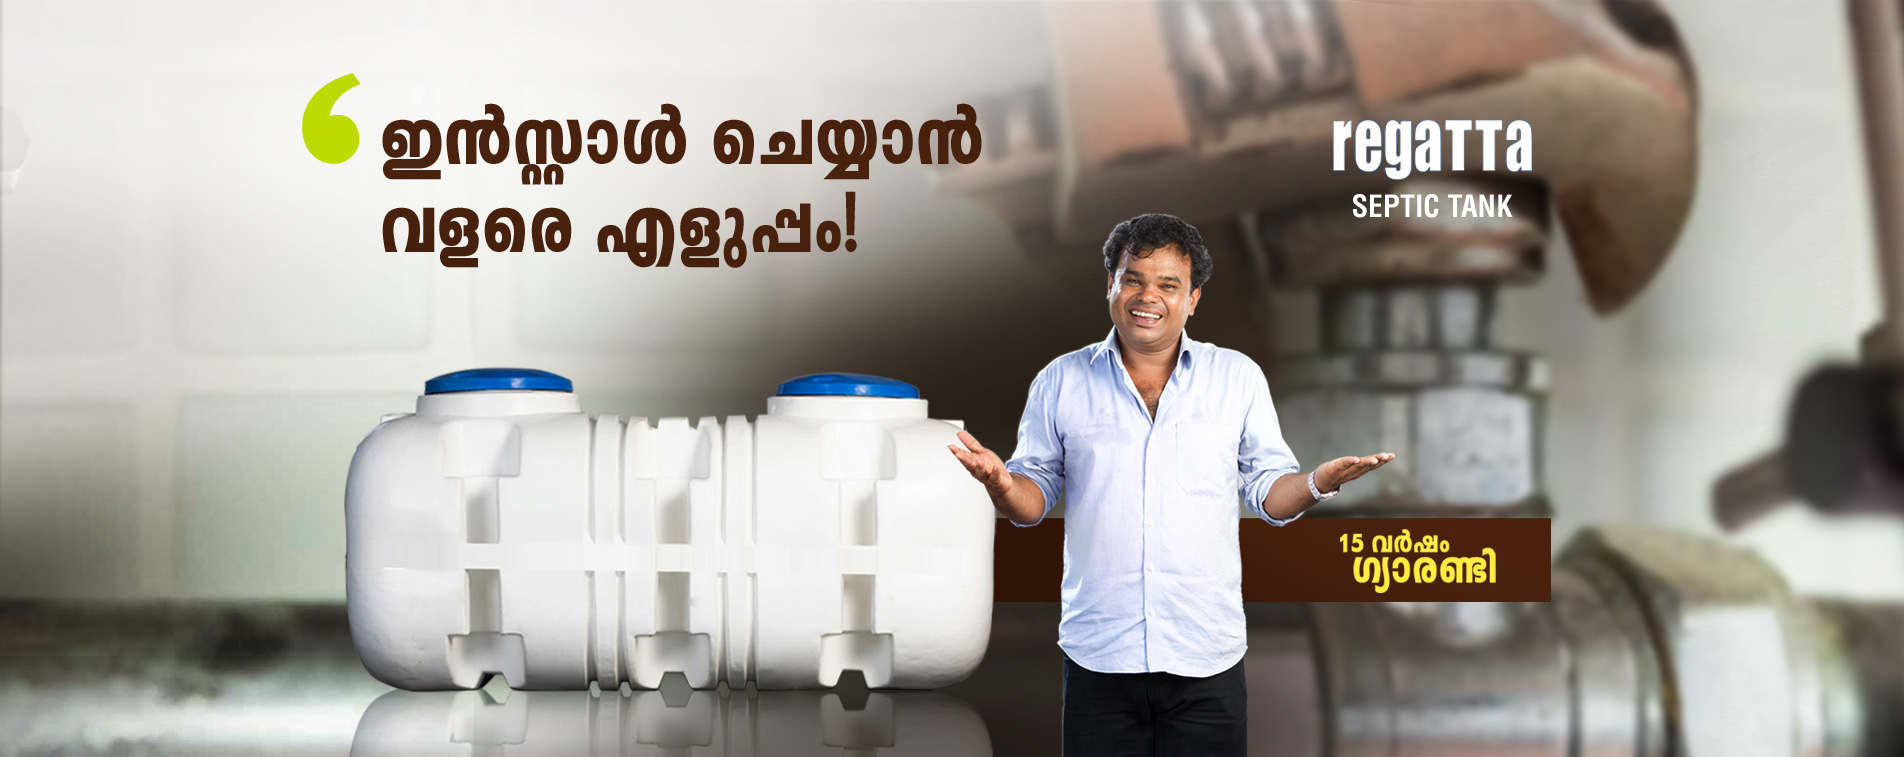 water tank manufacturer kerala